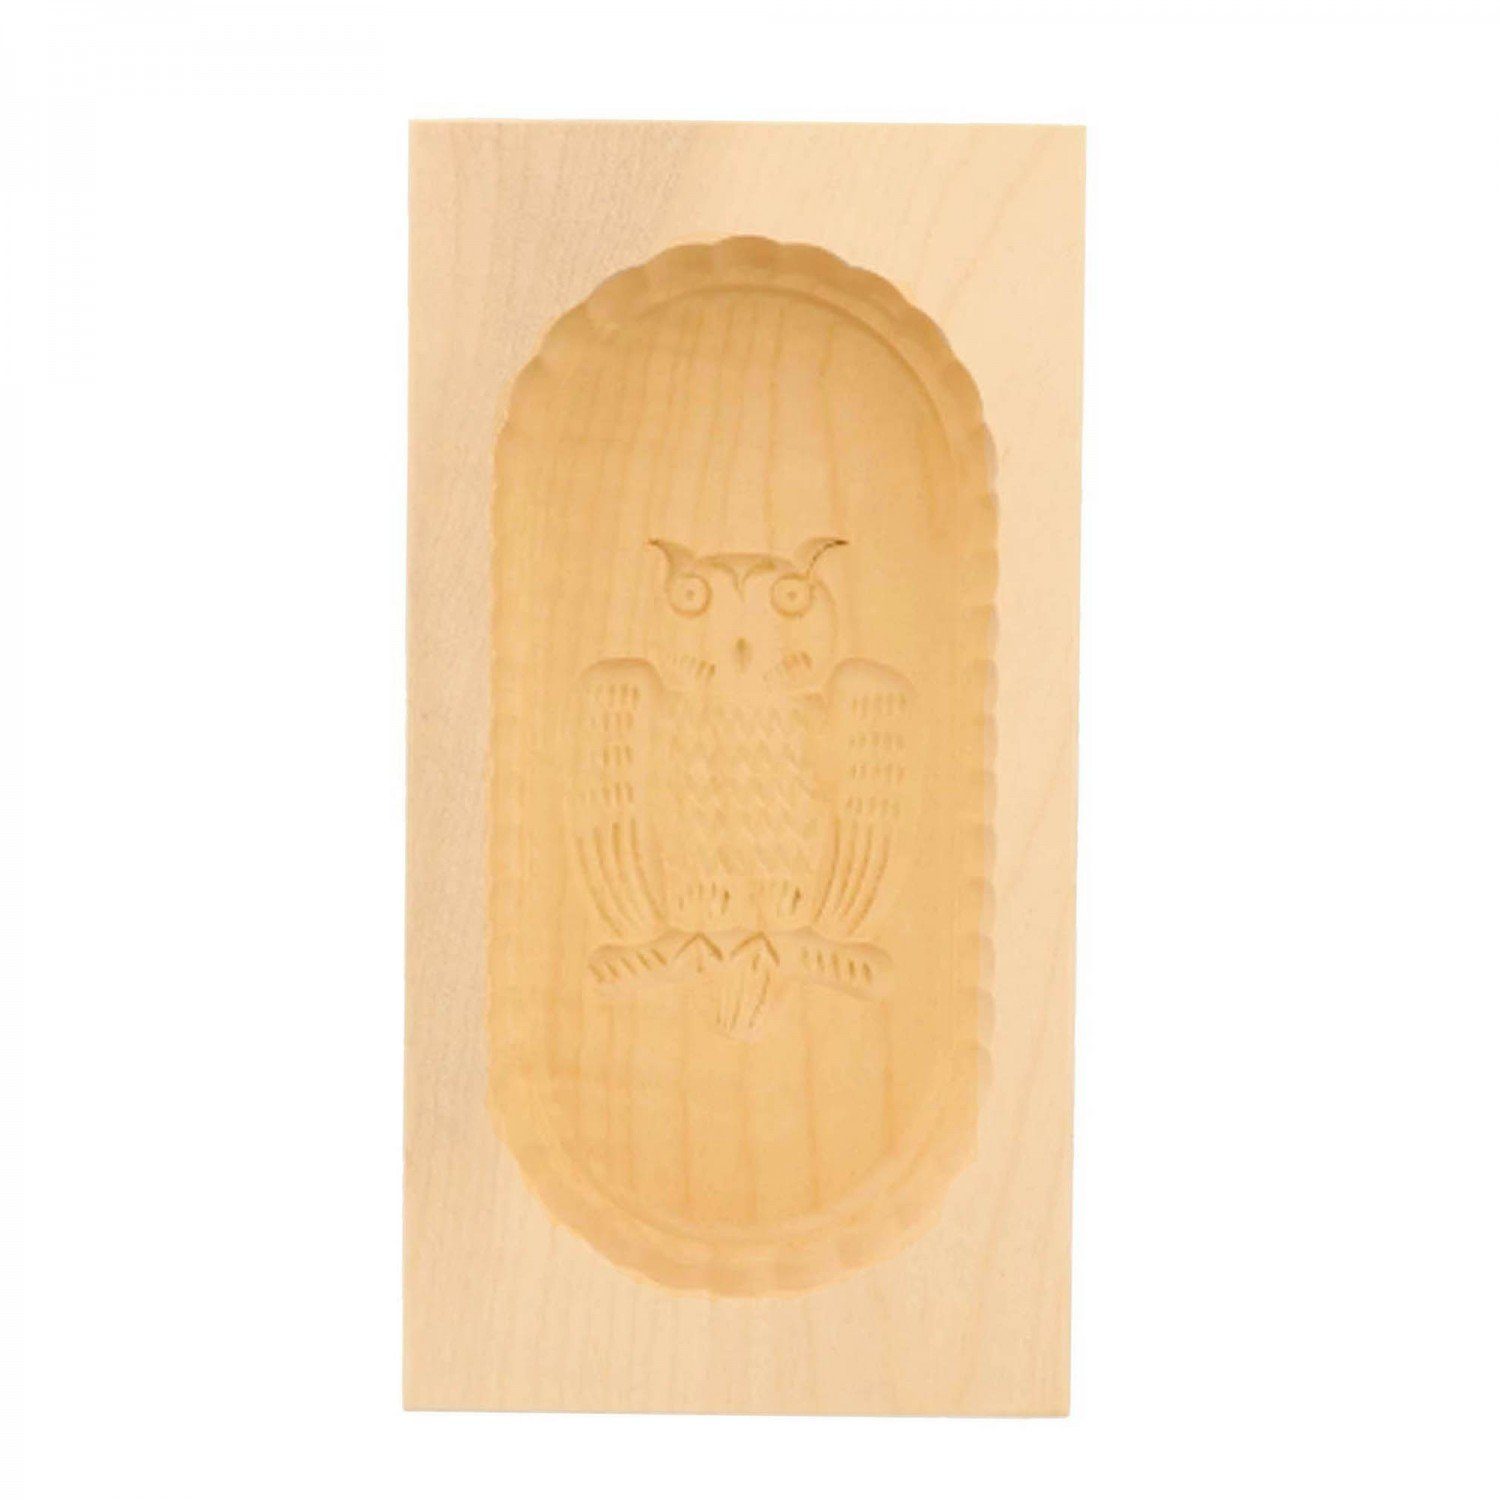 mitienda Servierplatte Butterform aus Holz Eulen Motiv, Sturz-Form 250g | Servierplatten